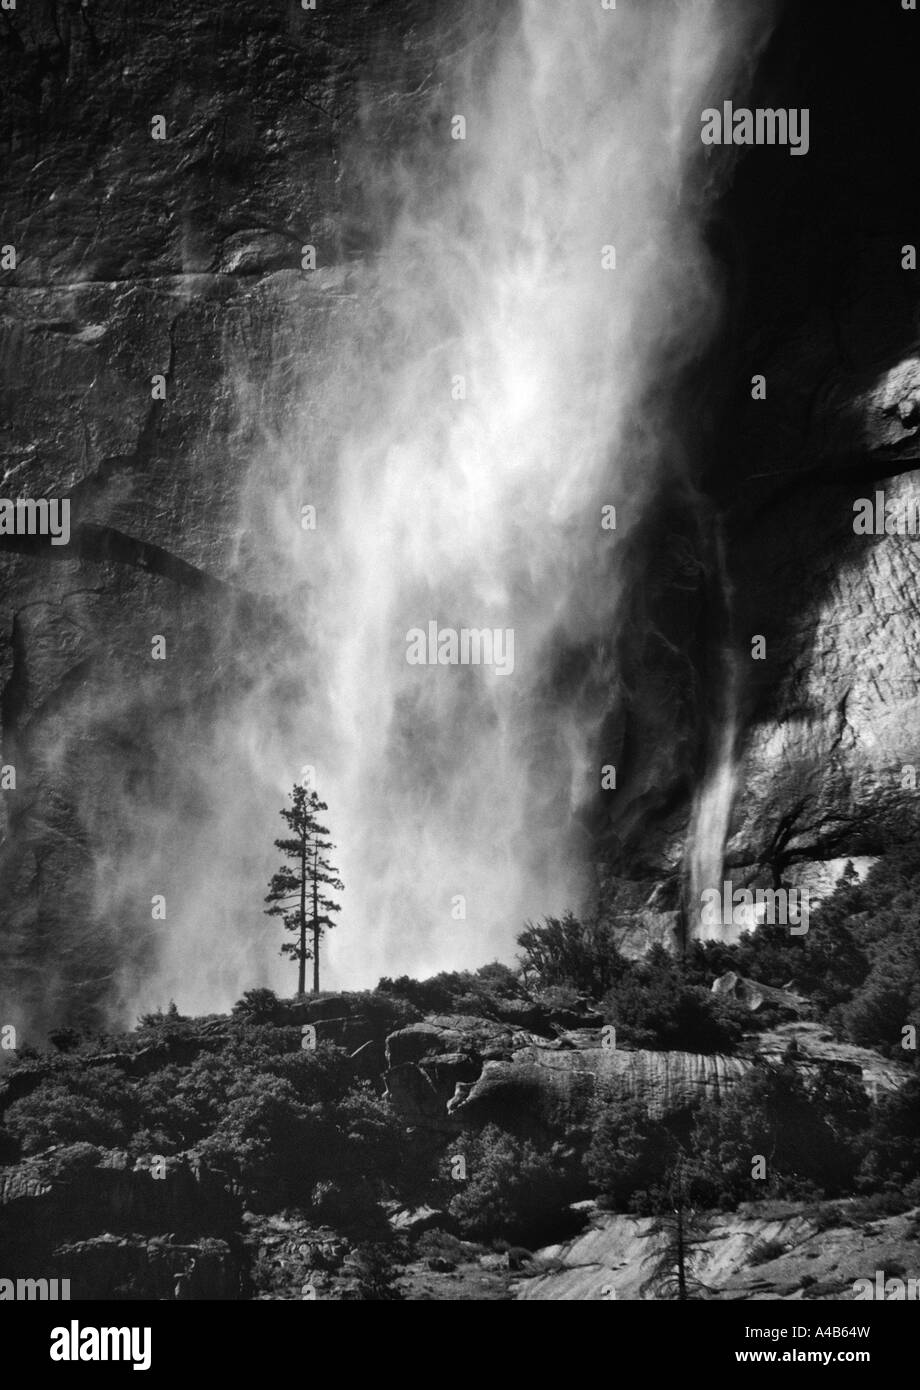 Image monochrome des chutes de Yosemite en plein air l'été avec des pins silhouettés contre l'eau qui tombe Banque D'Images